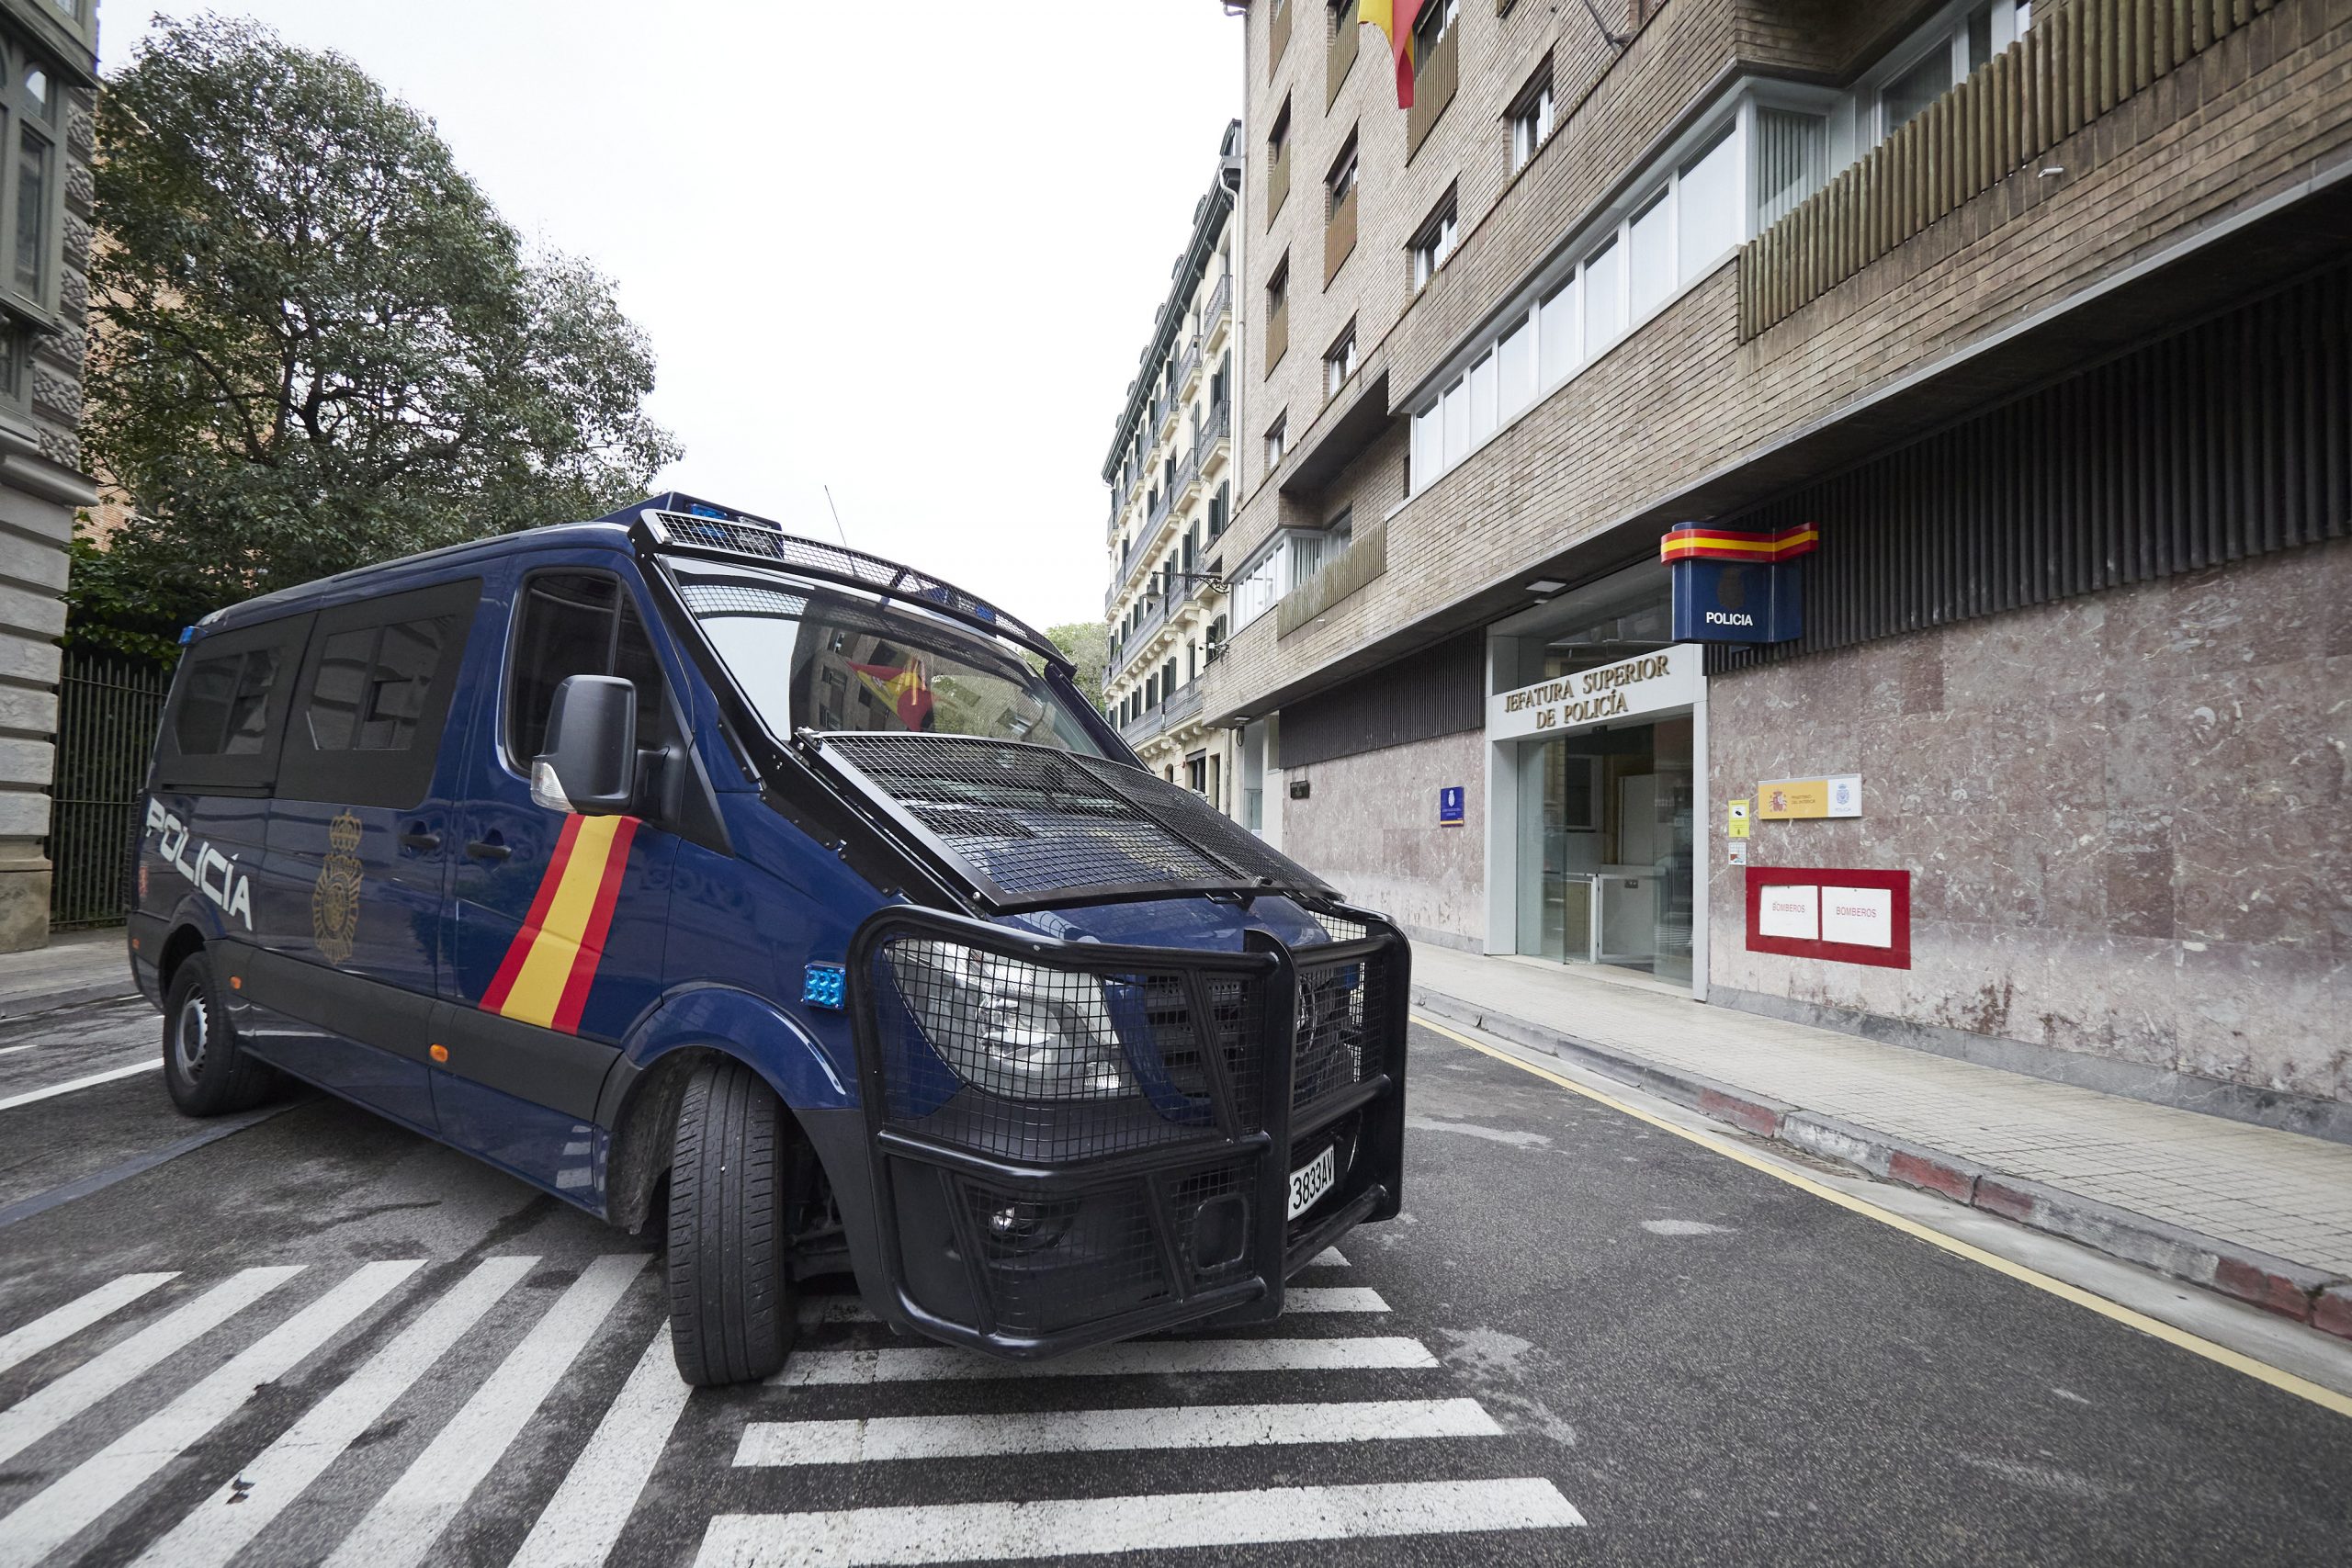 Reino Unido lanza una operación para localizar a 12 fugitivos que podrían estar en España